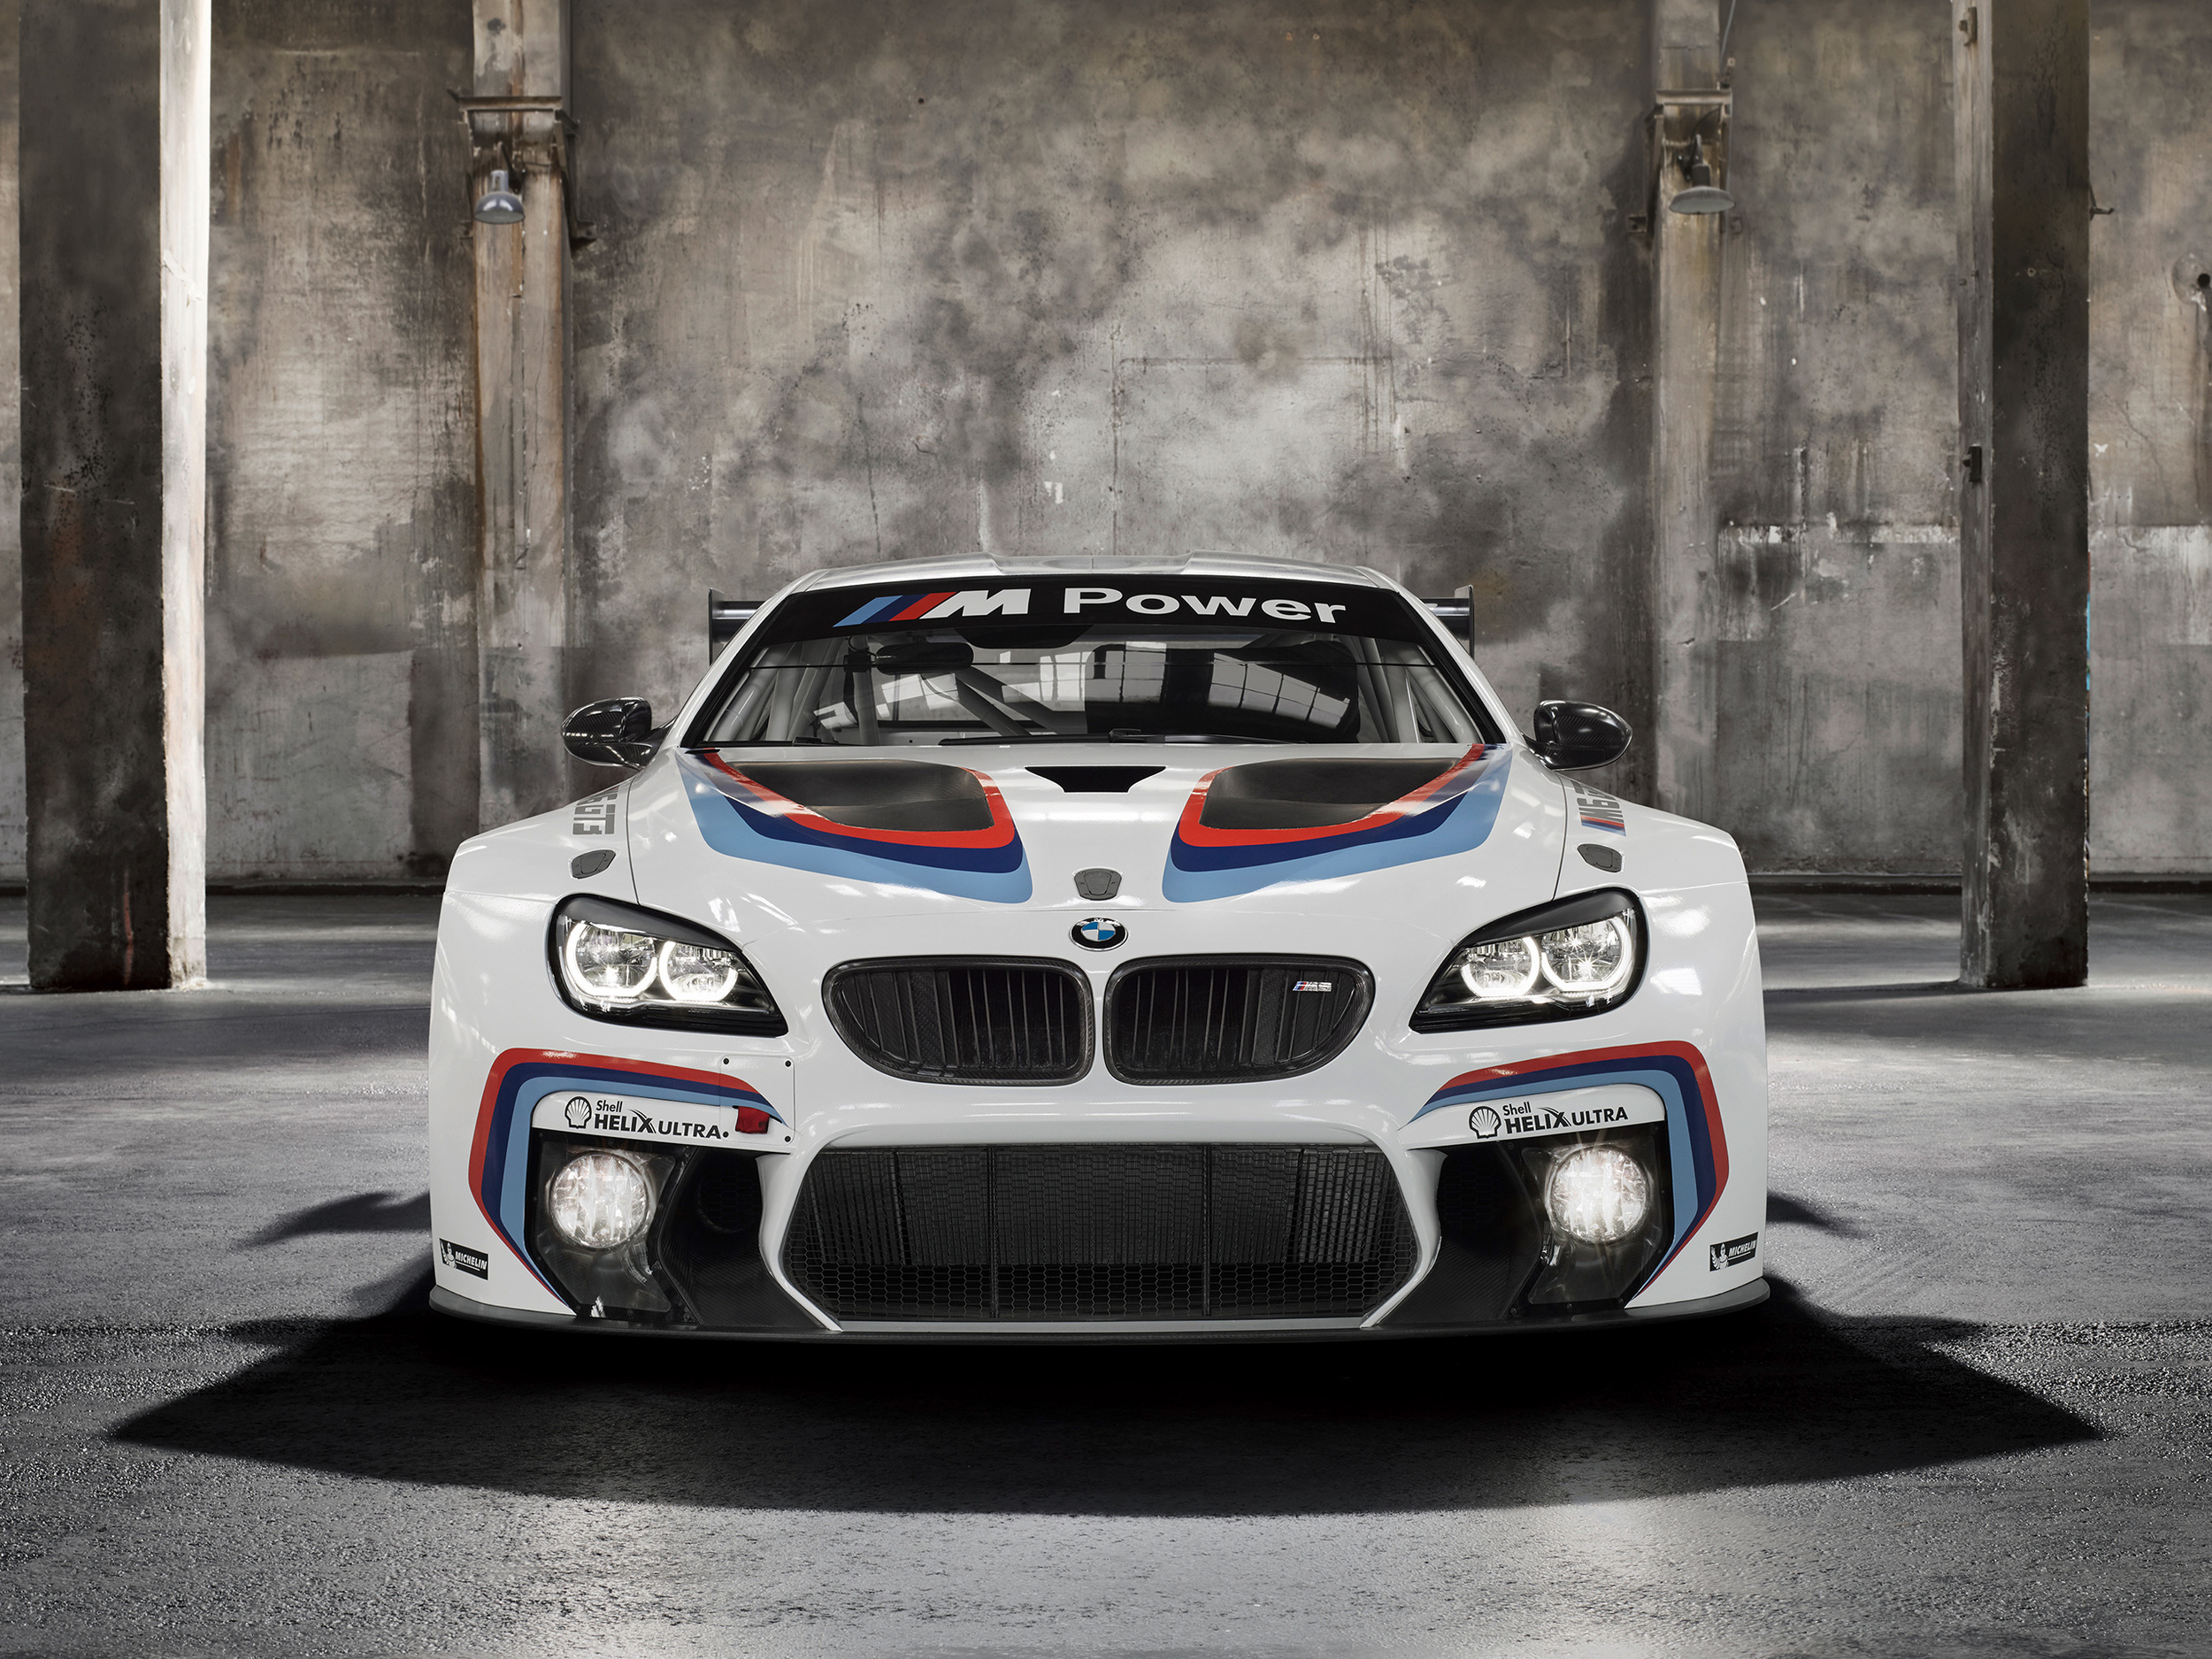 BMW commissions new Art Cars